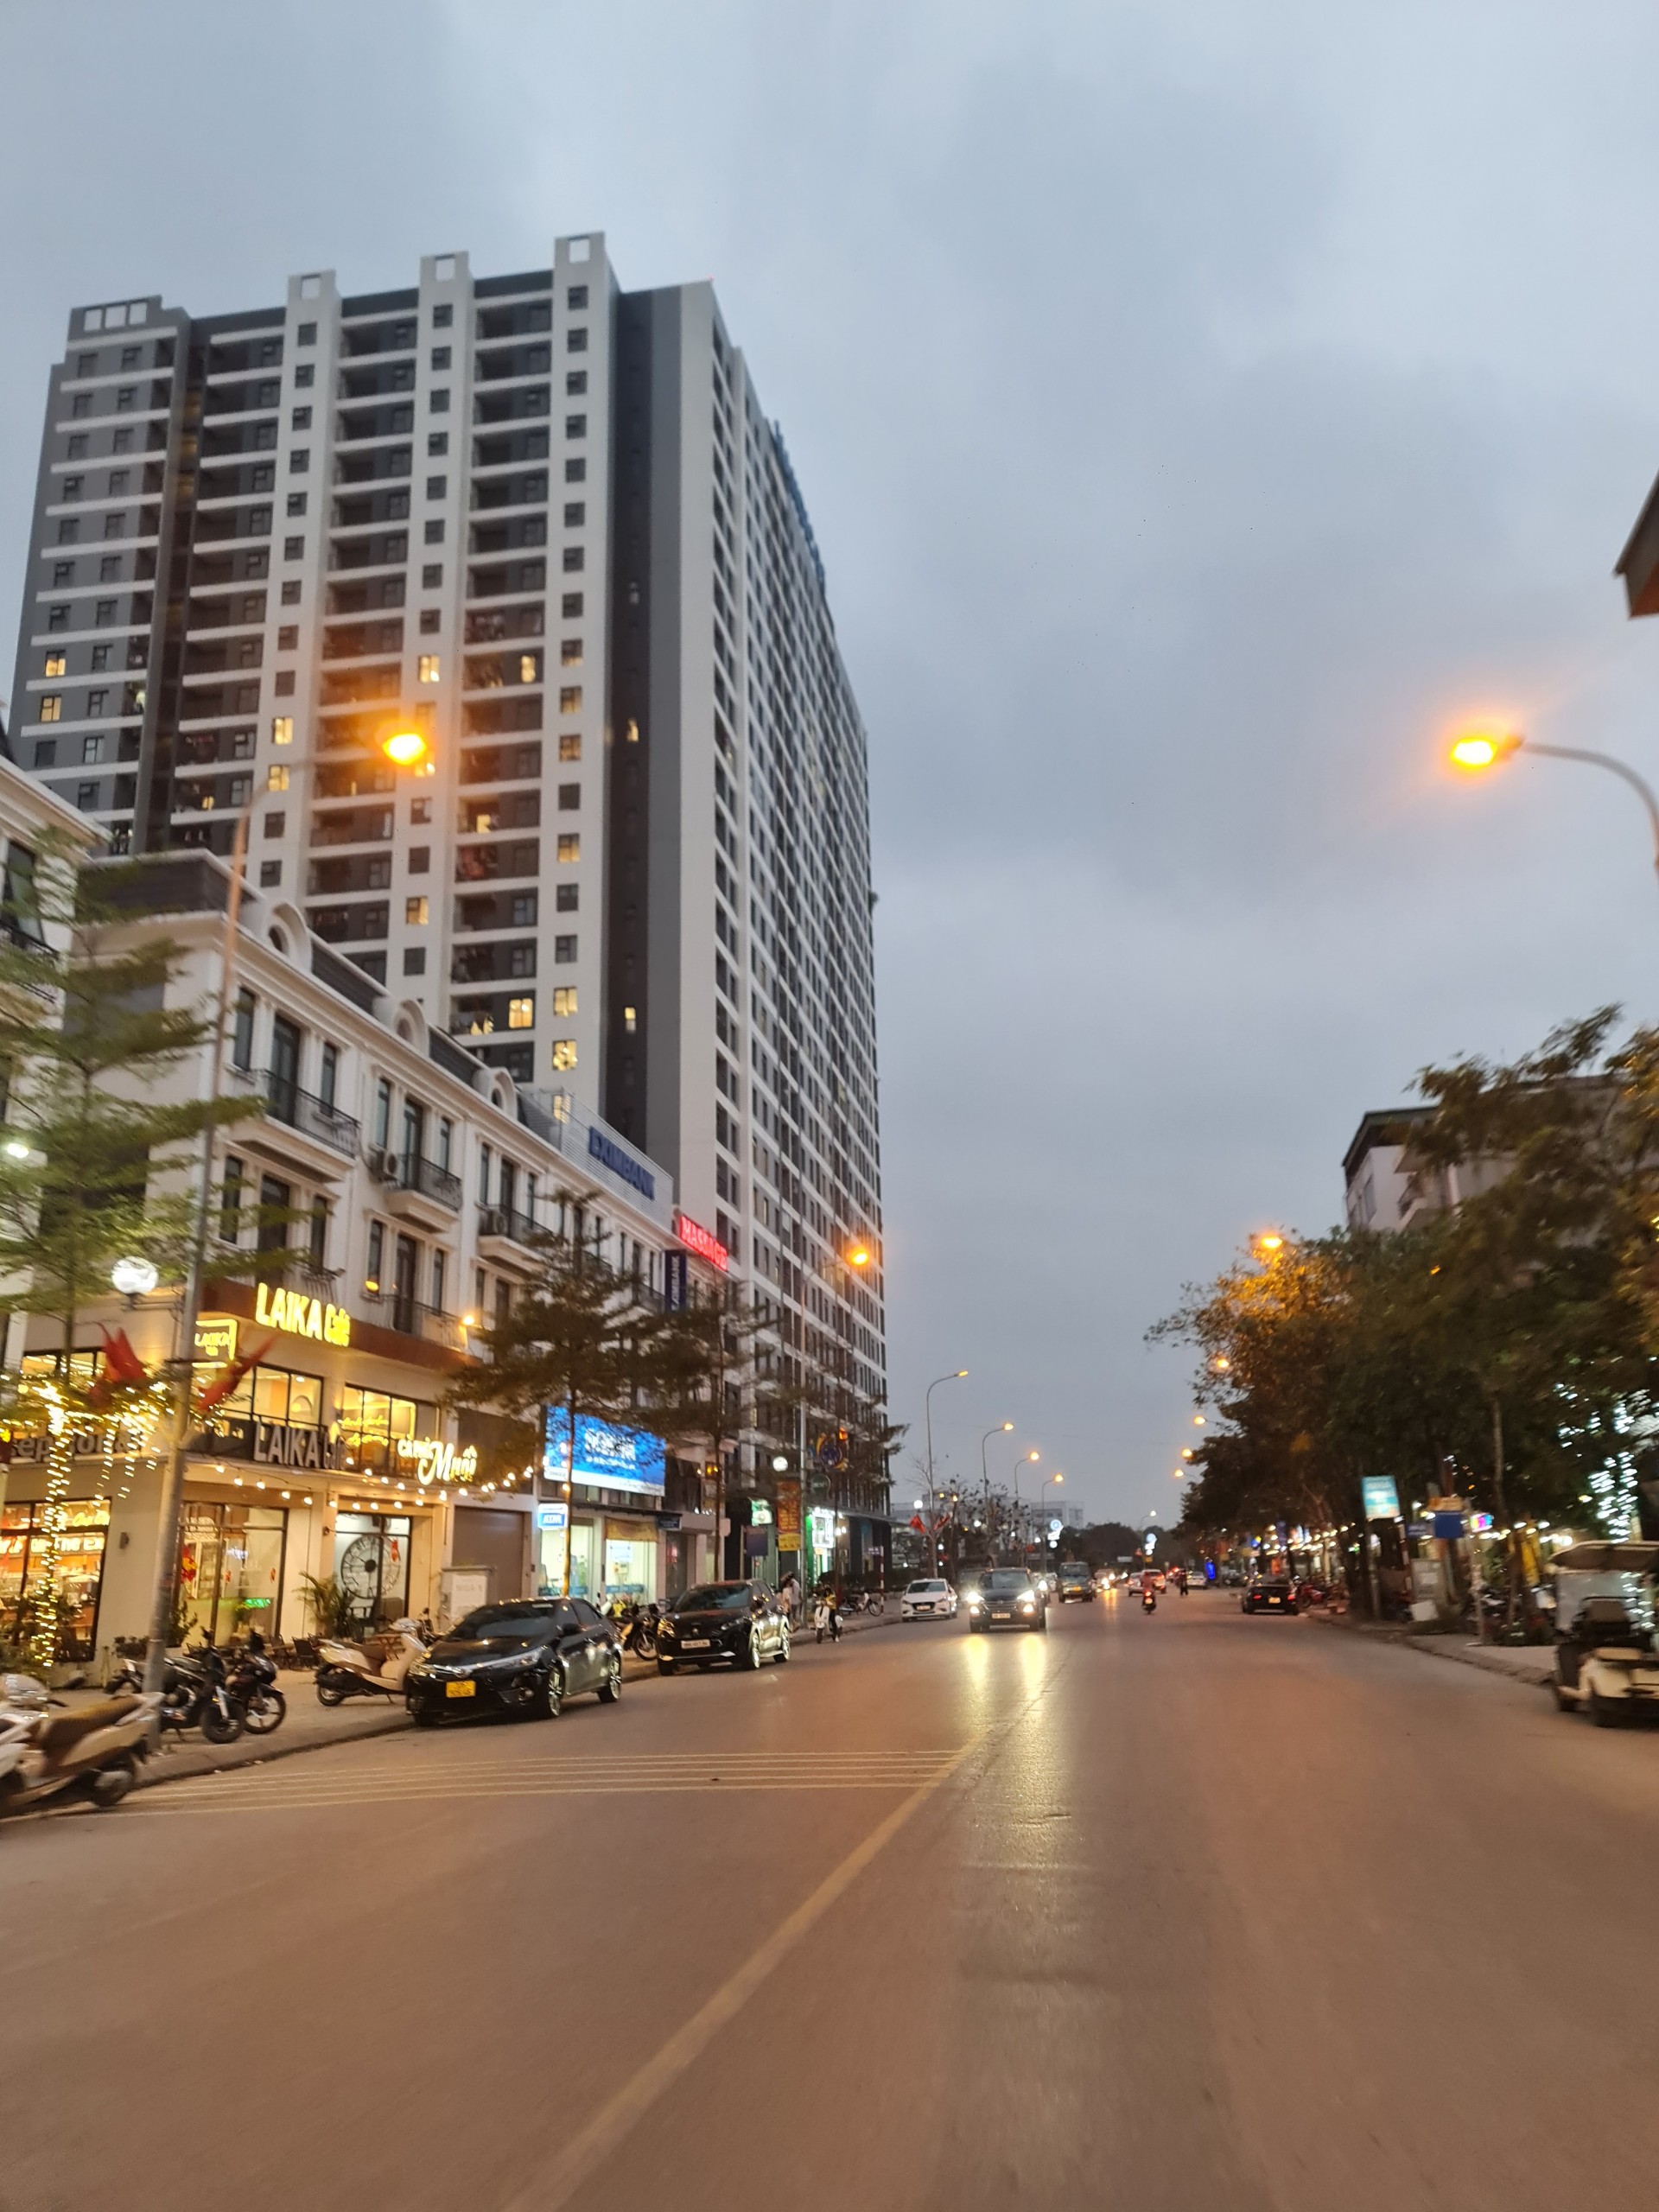 Bán đất mặt phố kinh doanh sần uât 299m2 Trâu Quỳ, Gia Lâm, Hà Nội. Lh 0989894845 - Ảnh chính